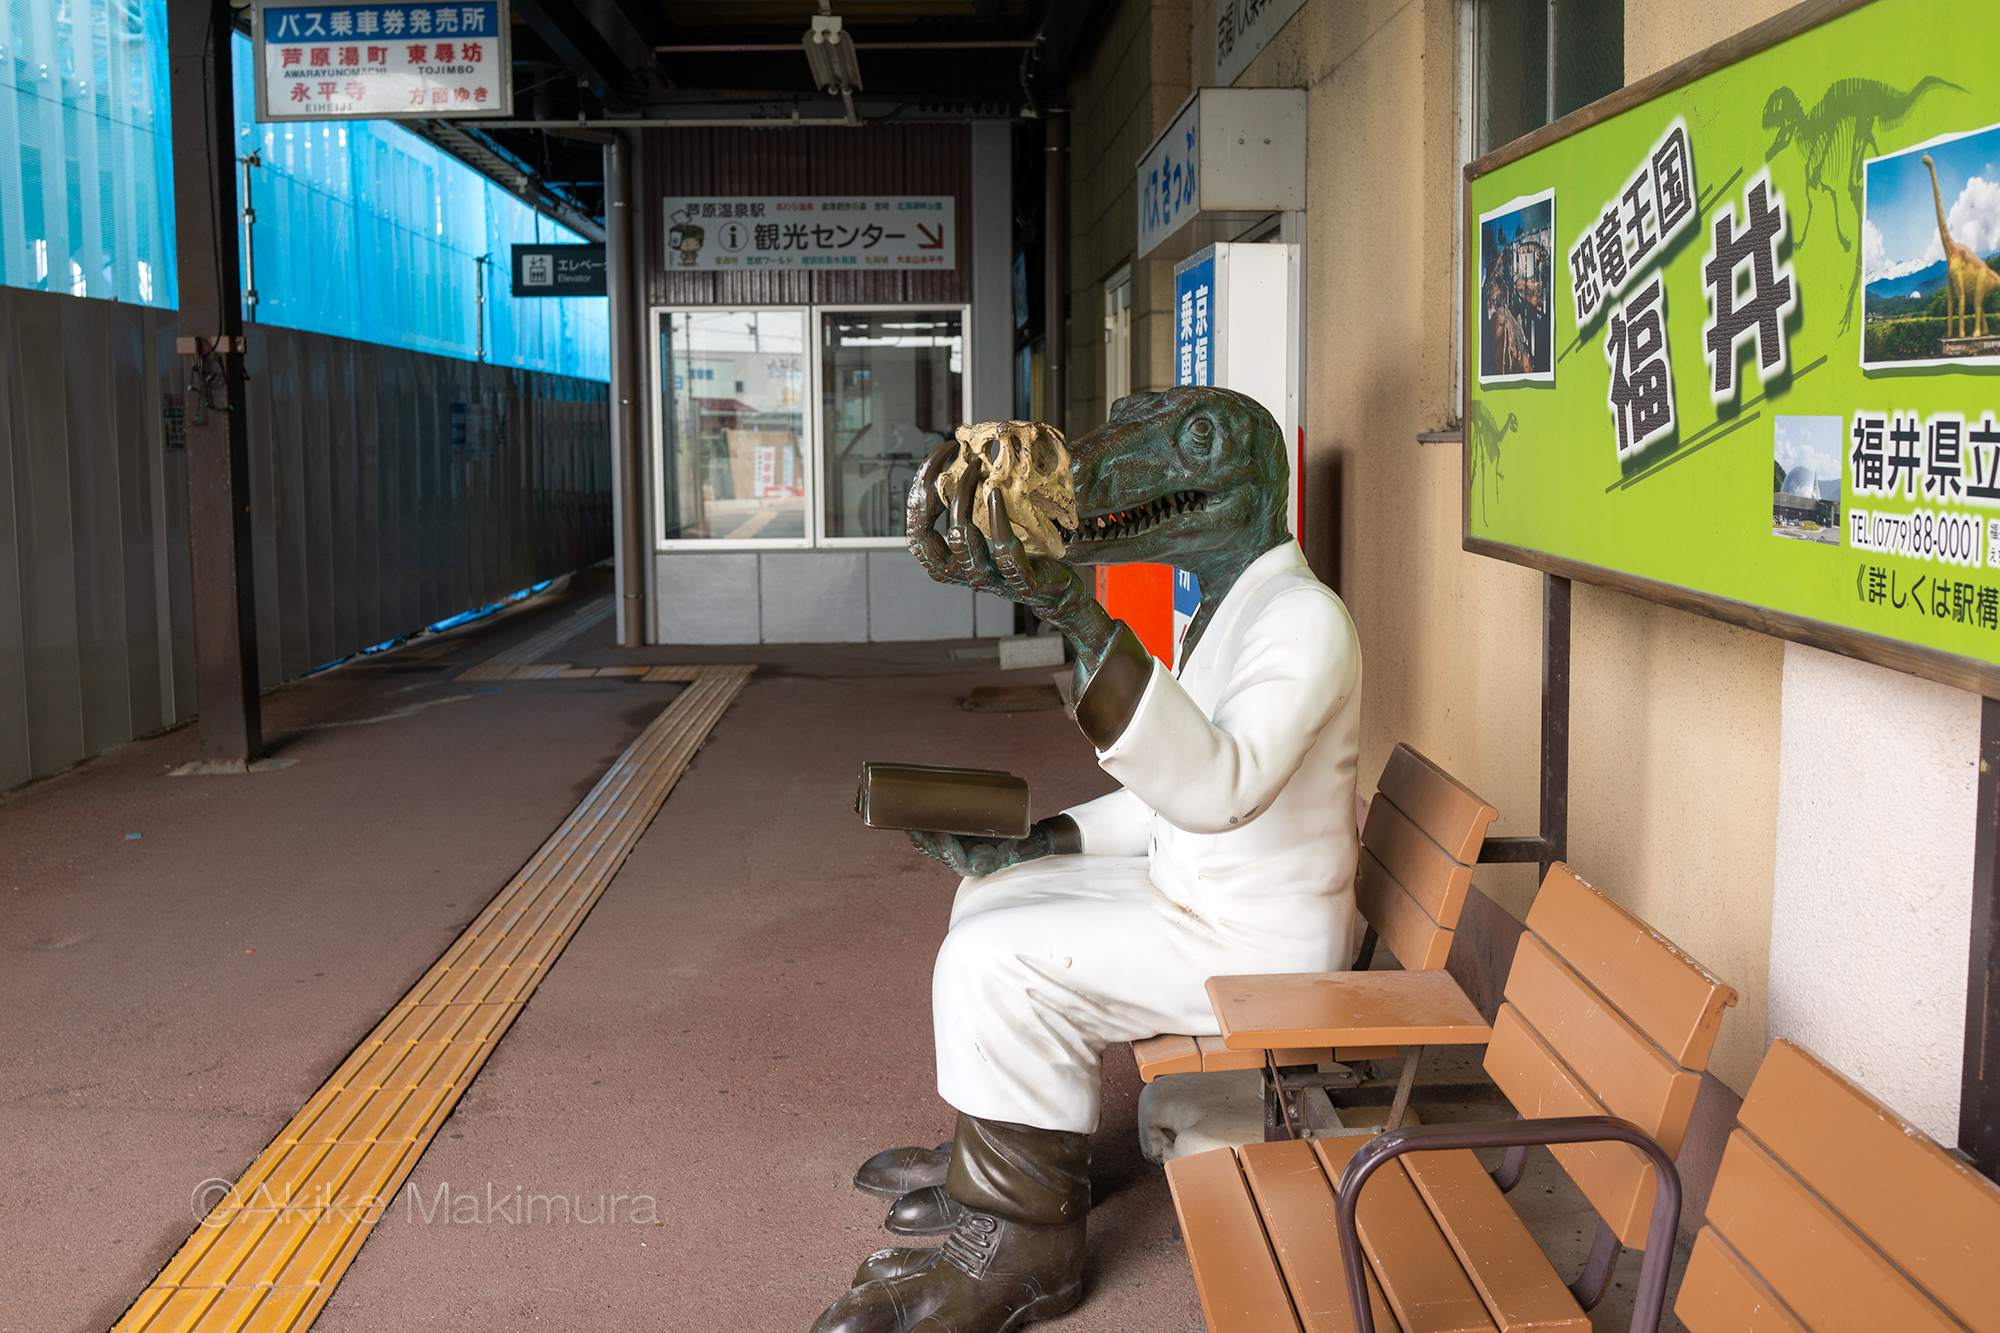 恐竜博士とタクシーと本荘駅